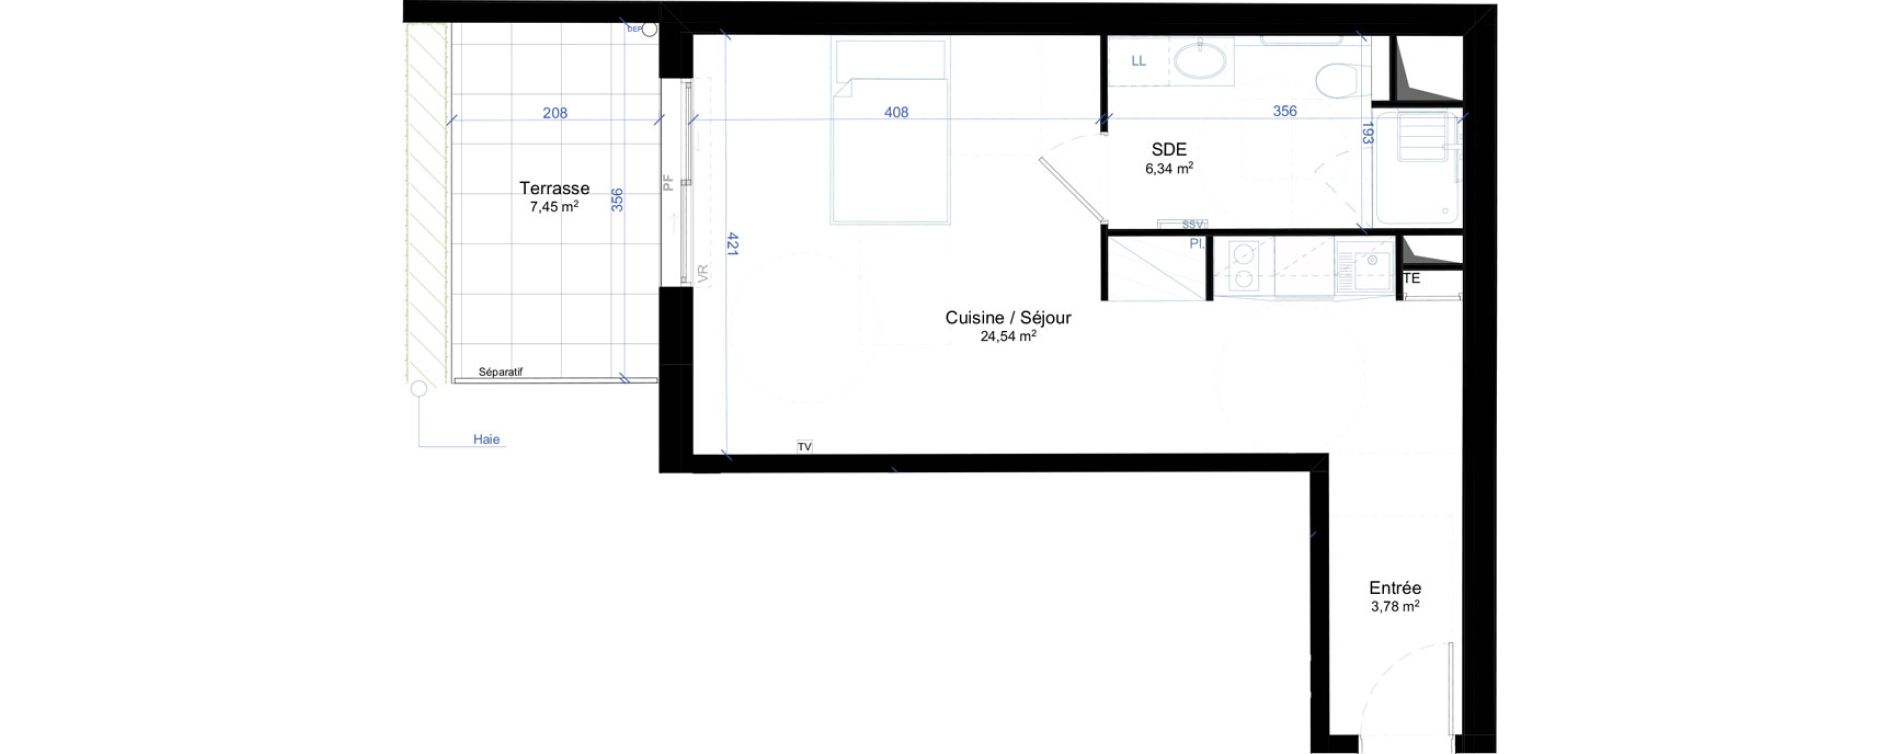 Appartement T1 meubl&eacute; de 34,66 m2 &agrave; Narbonne Anatole france - gare